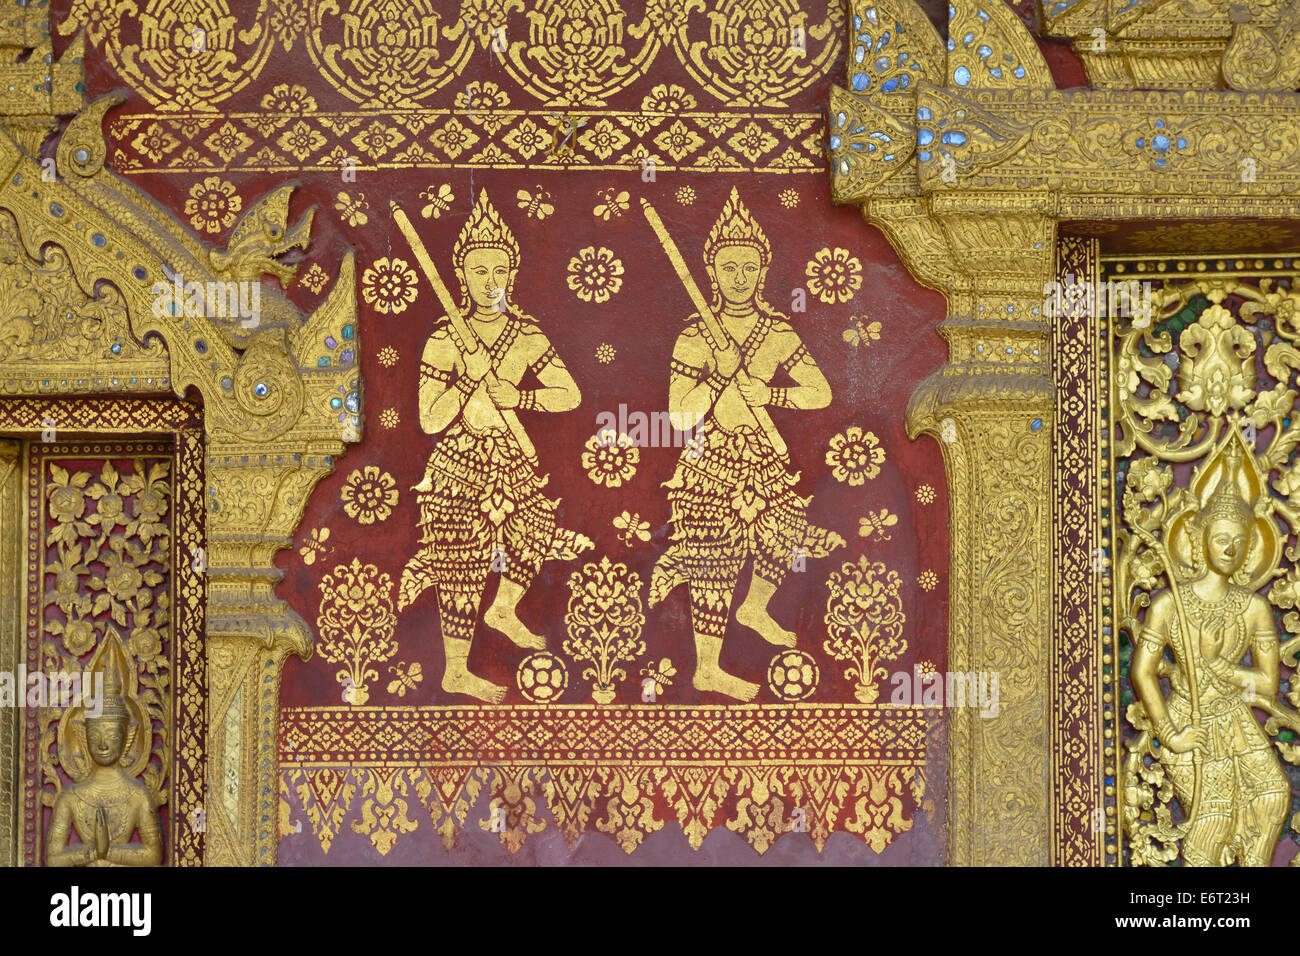 Detail of an engraving of Wat Saen in Luang Prabang, Laos Stock Photo